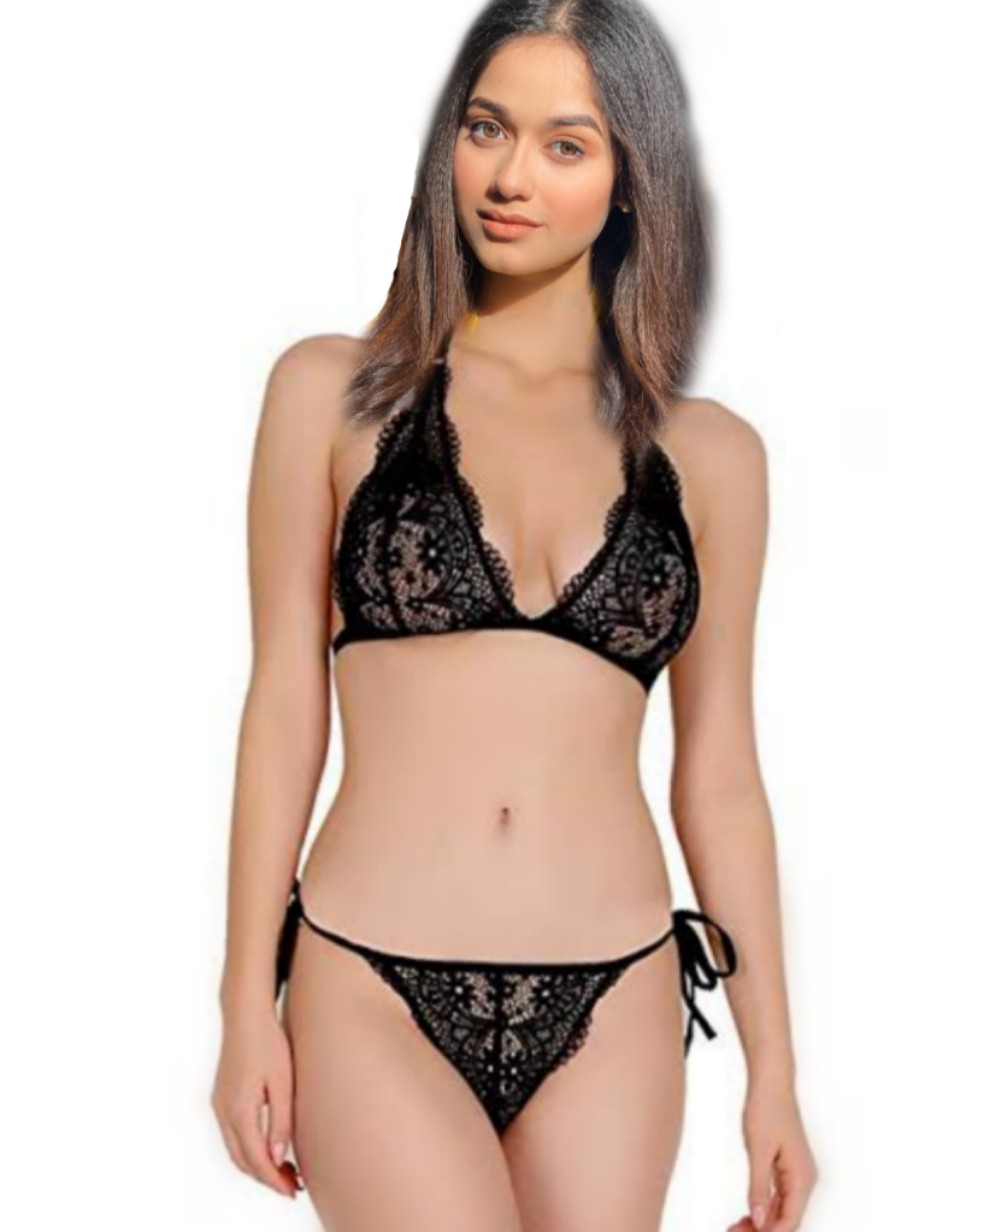 Jannat Zubair Bikini